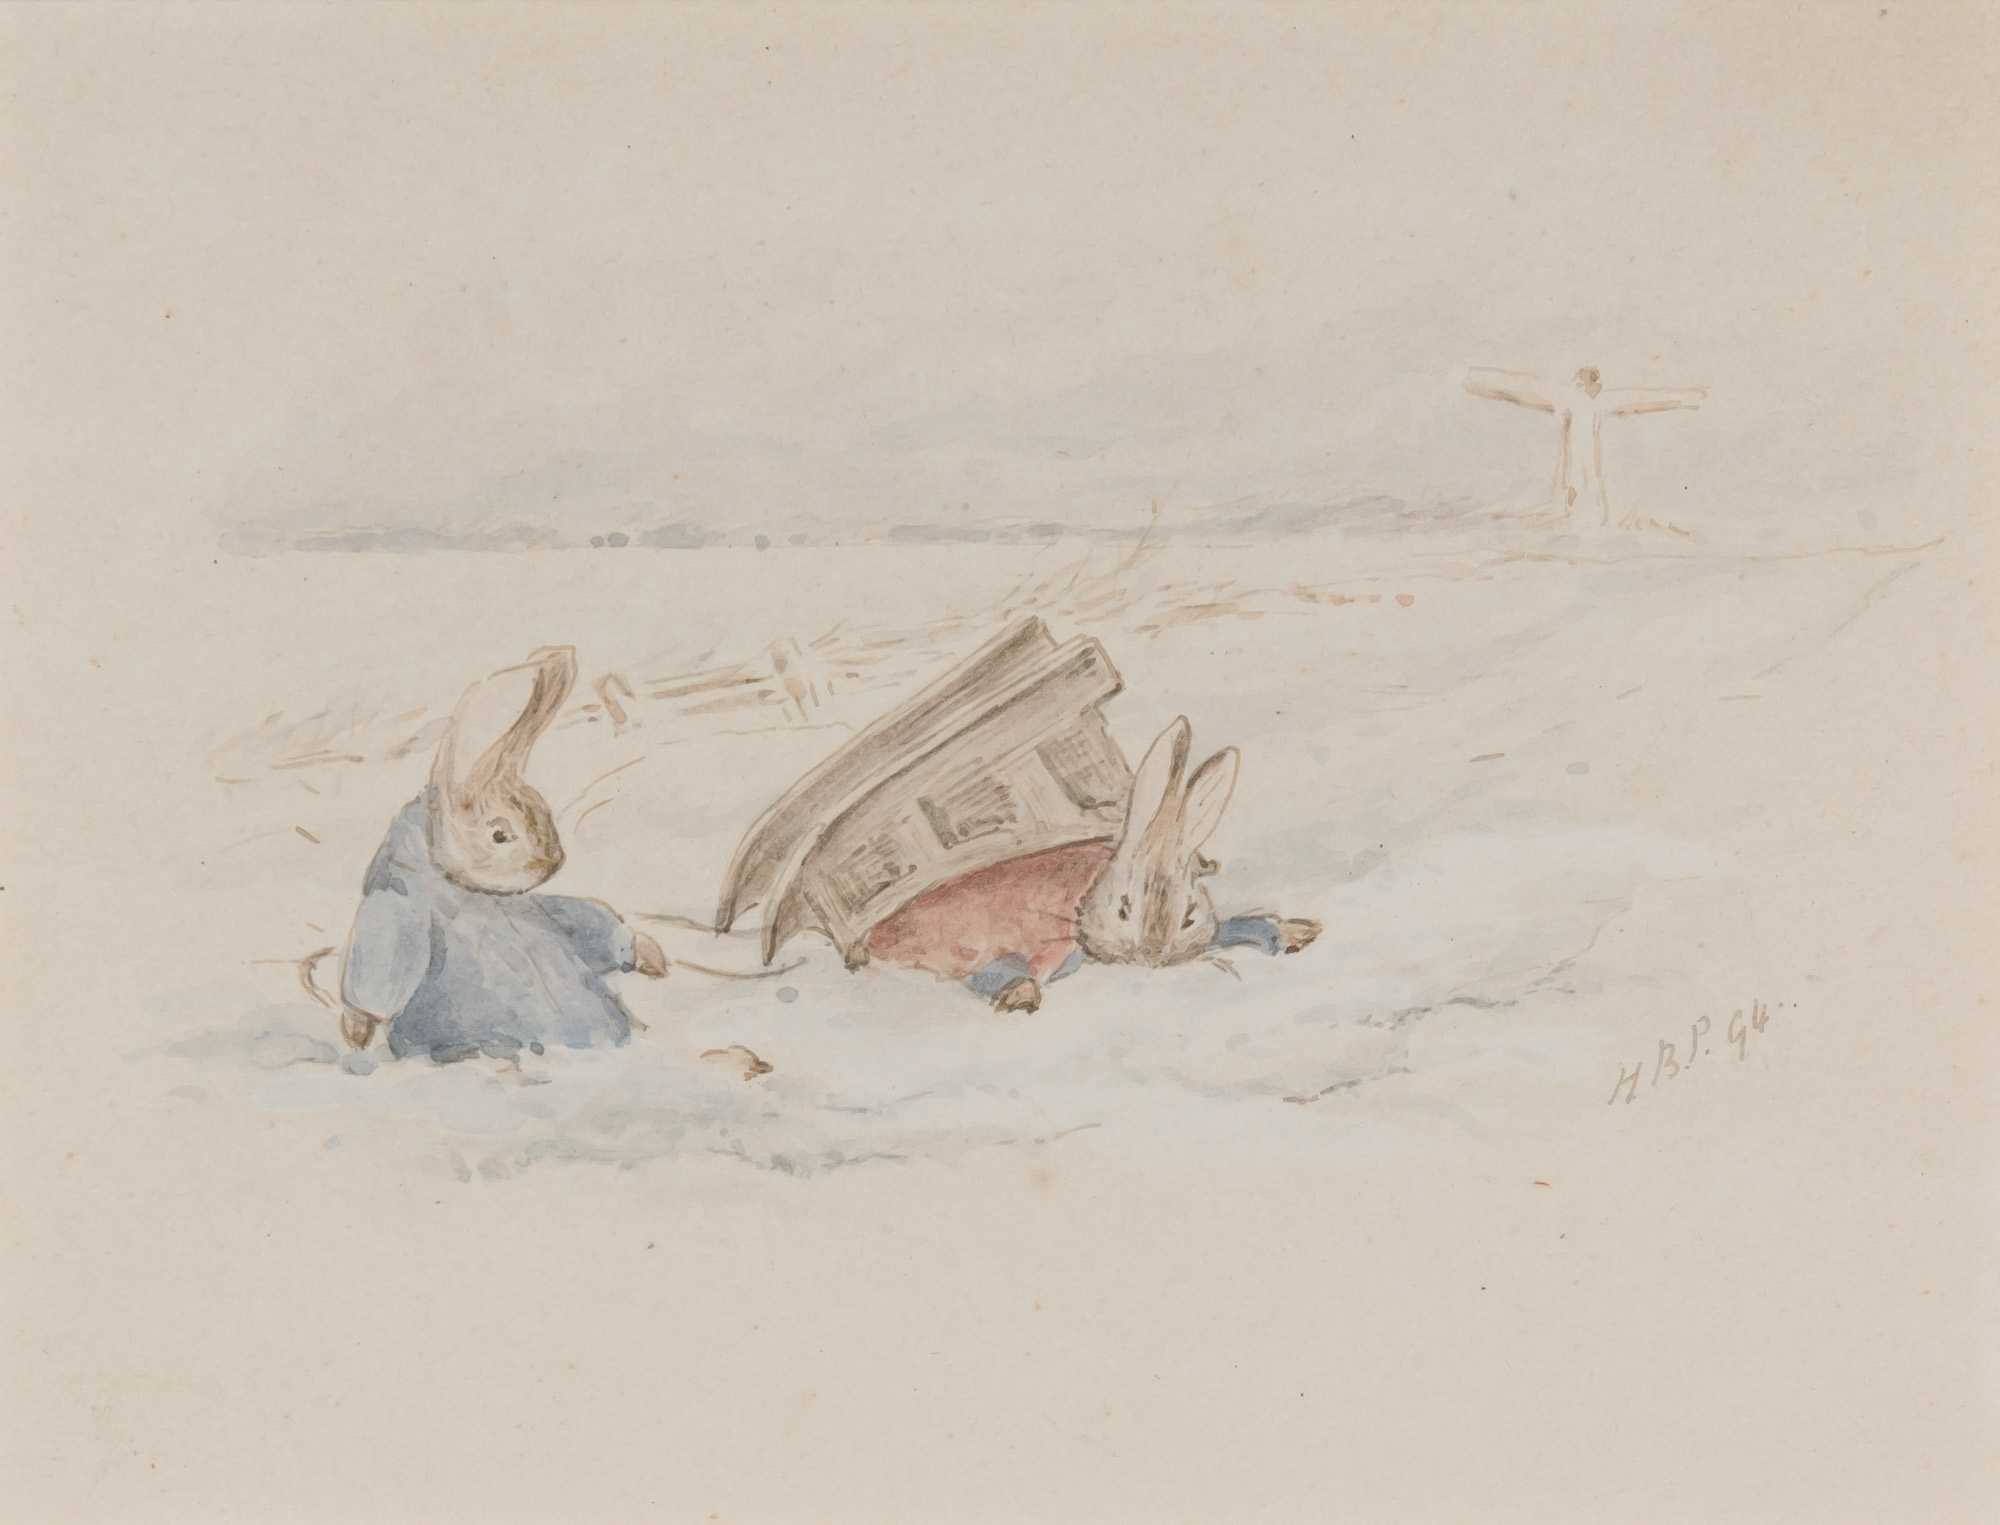 La luge de Peter Rabbit by Beatrix Potter - 1907 - 9 x 11 cm collection privée